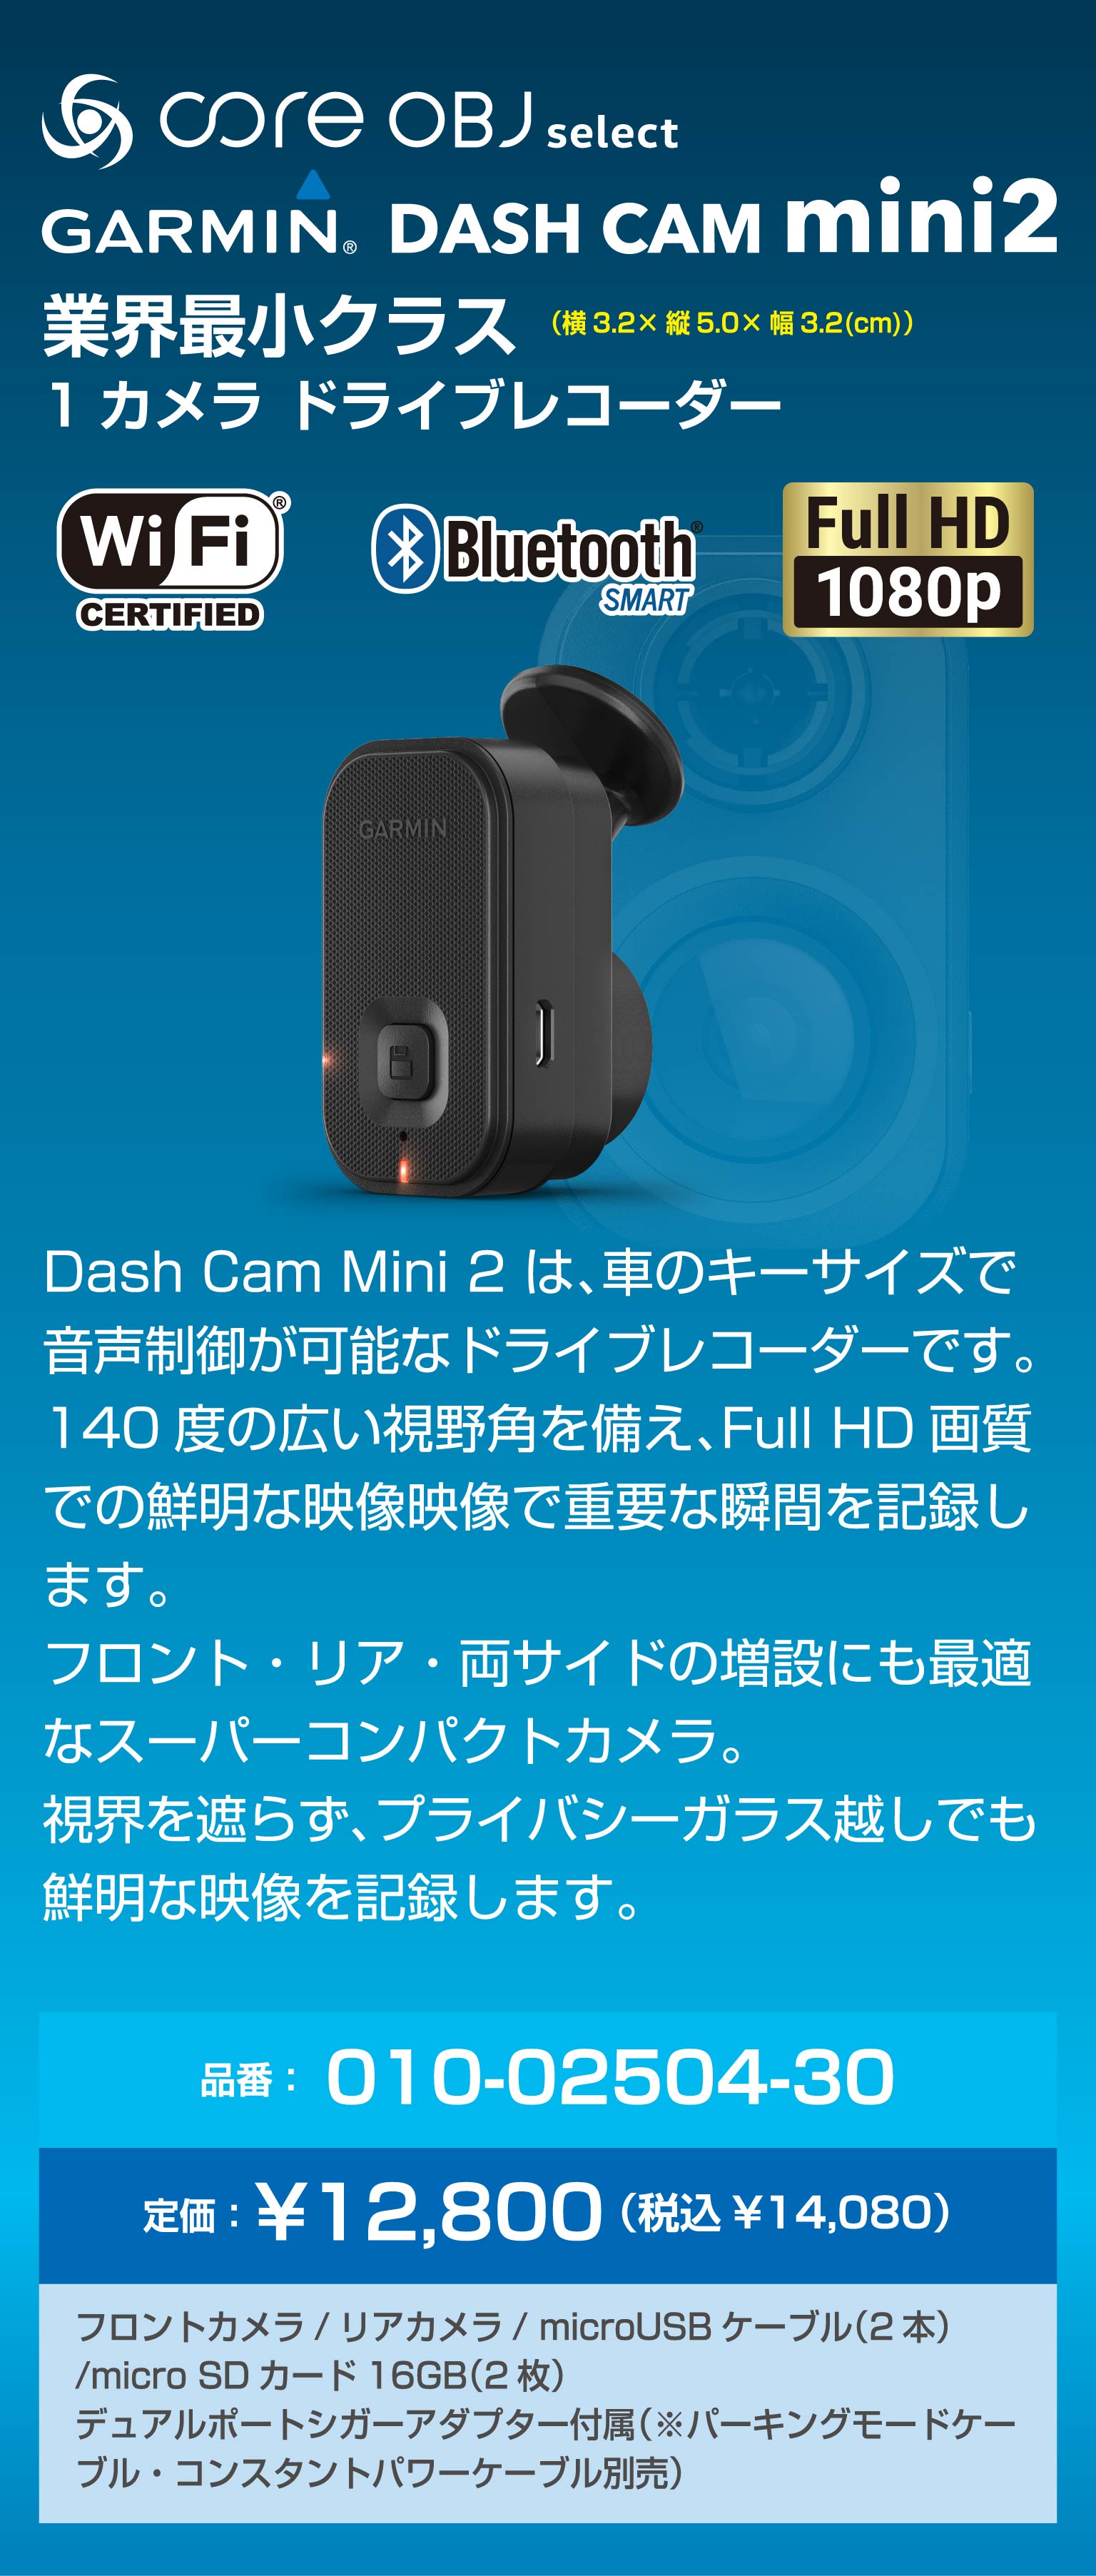 GARMIN DASH CAM mini2 / core obj select